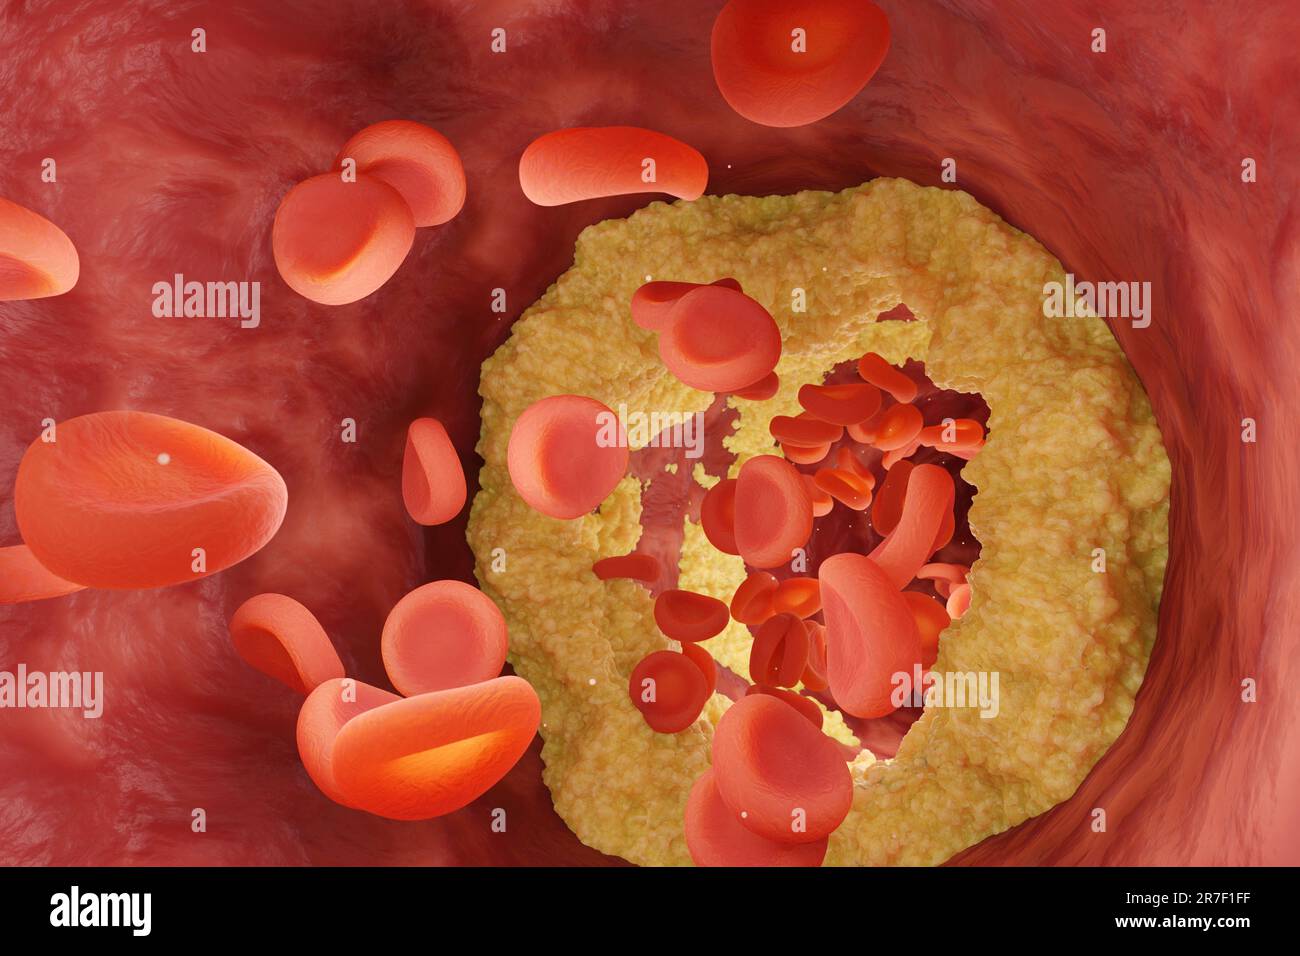 Blutgefässe durch Cholesterin verengt, durch die rote Blutkörperchen fließen. Illustration des Krankheitsbegriffs hoher Cholesterinspiegel Stockfoto